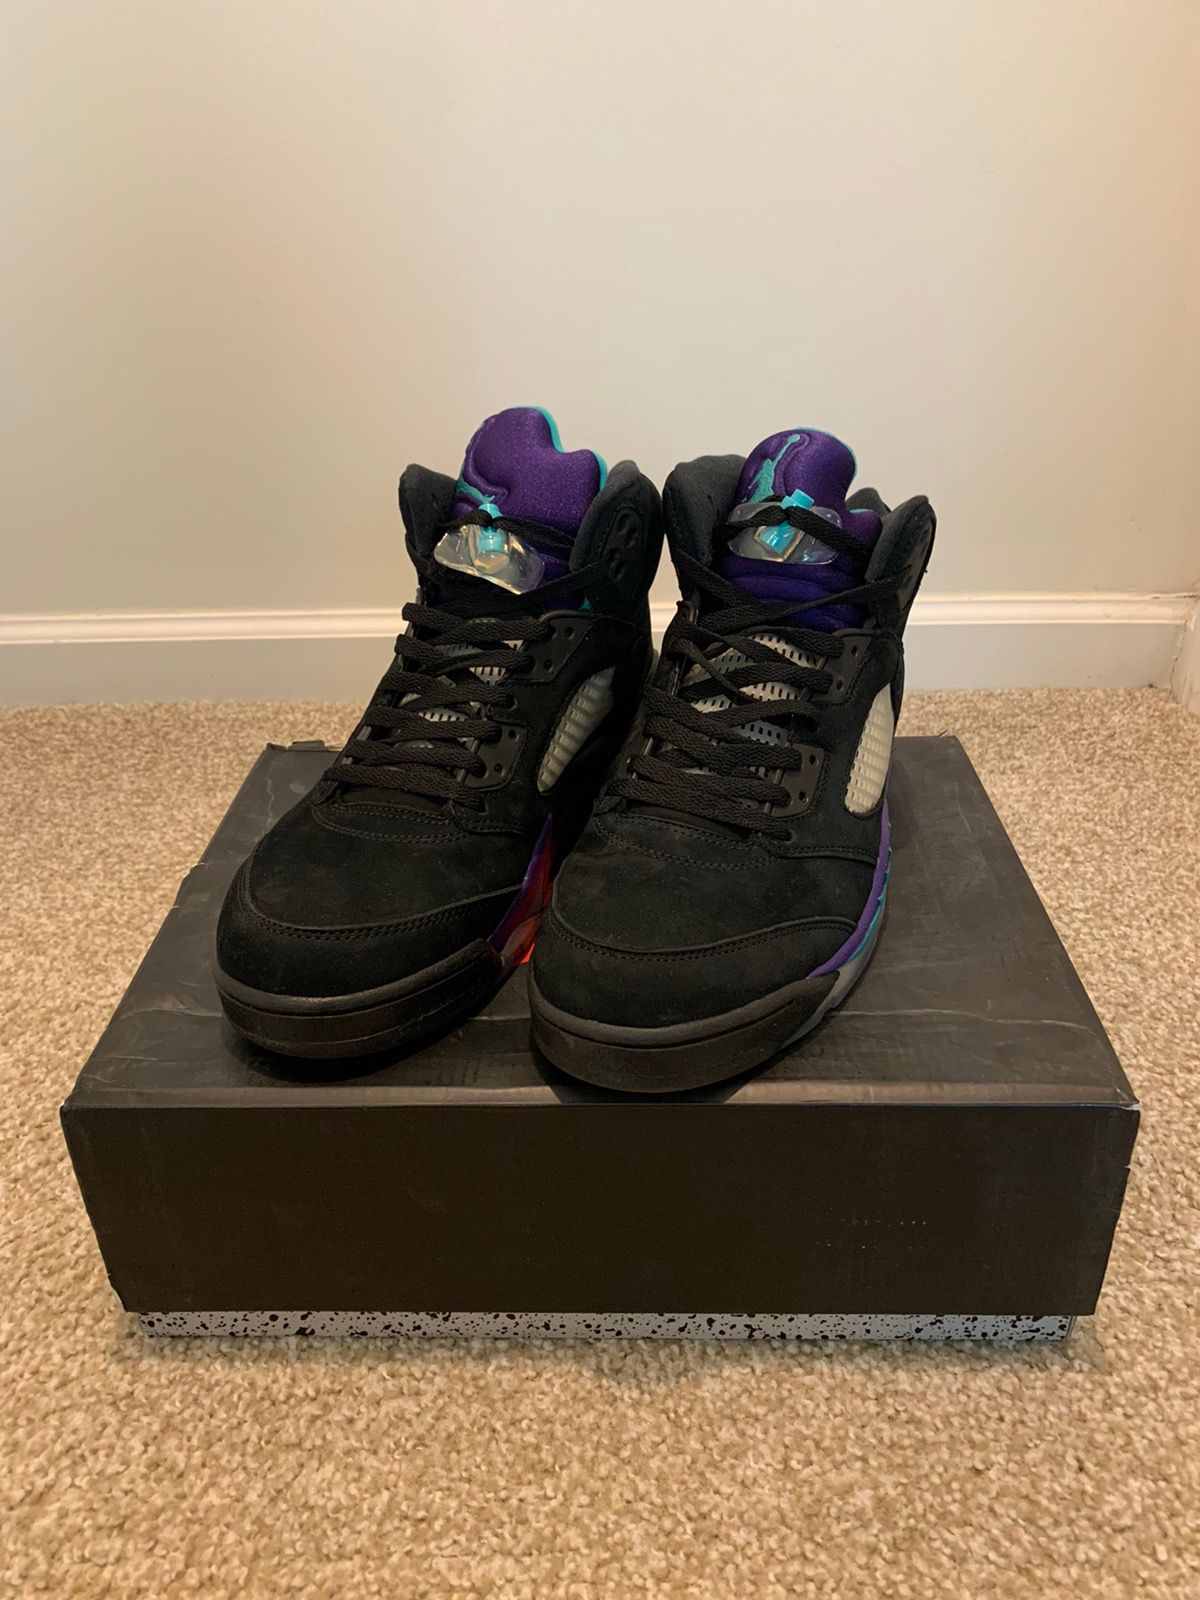 Pre-owned Jordan Nike Jordan 5 Retro Black Grape Shoes In Purple